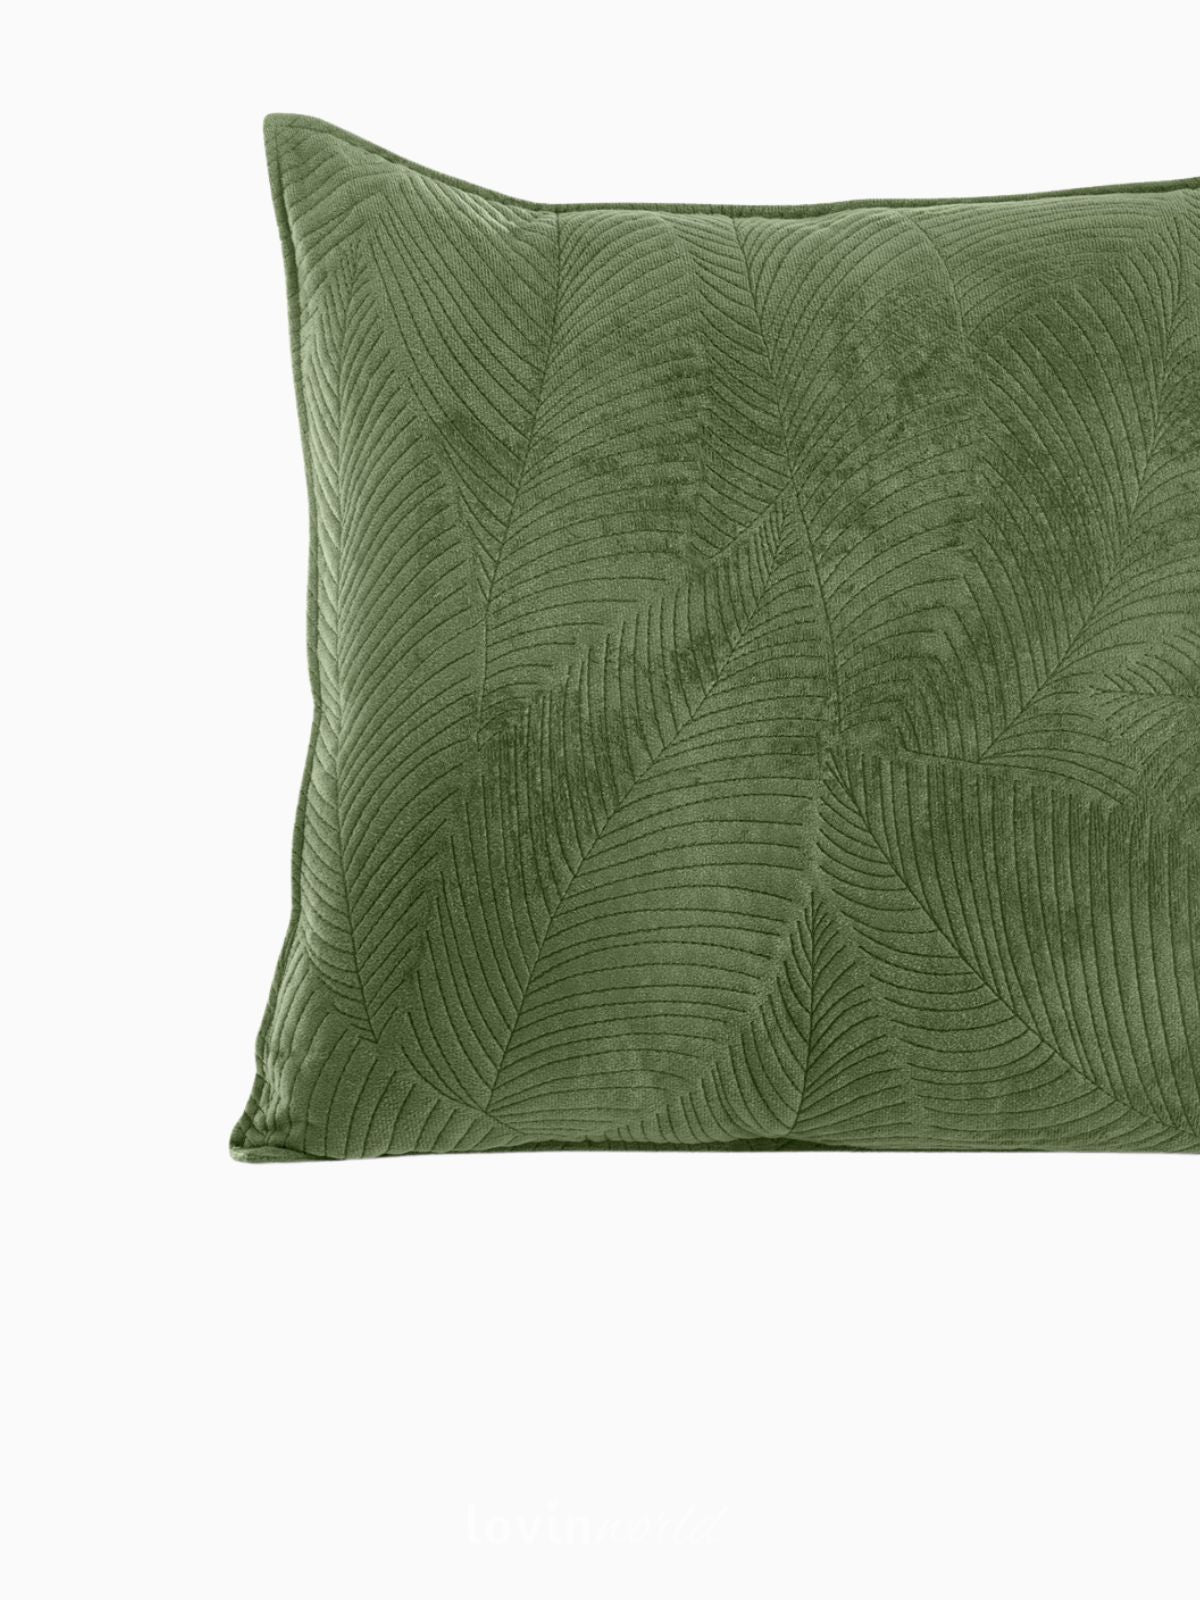 Cuscino decorativo in velluto Palsha, colore verde 45x45 cm.-4